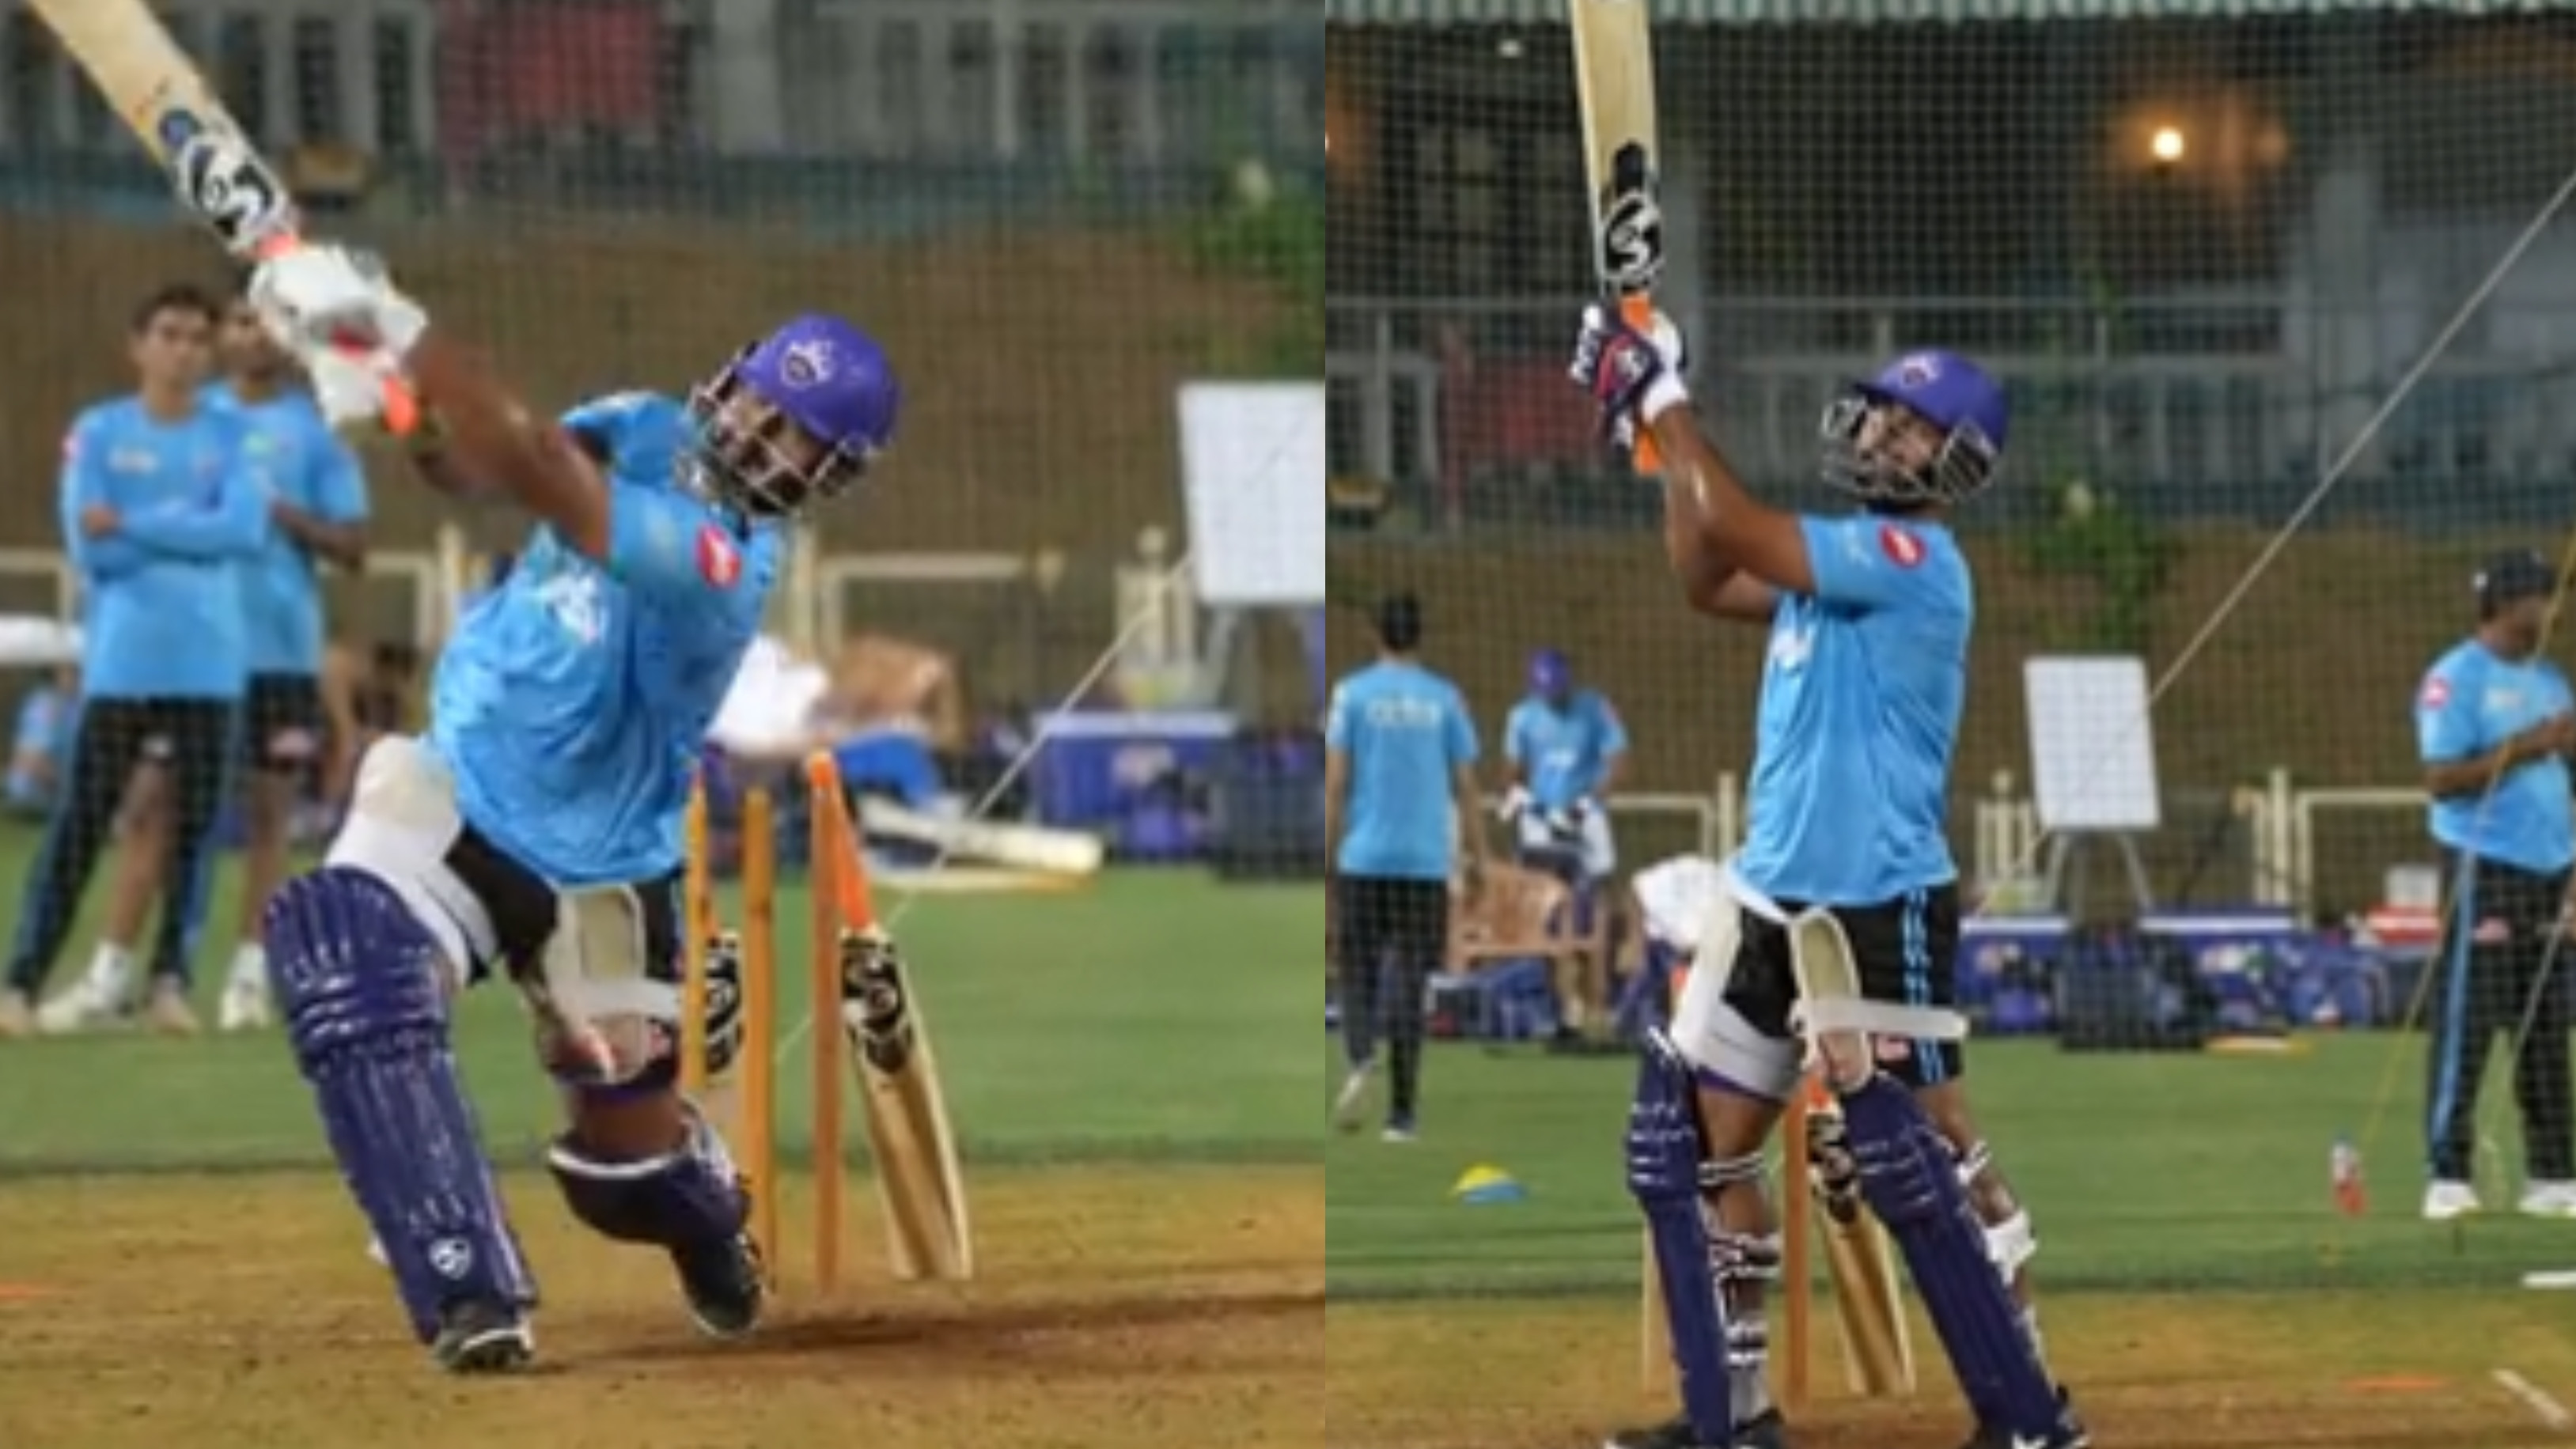 IPL 2022: WATCH - “Dilli ko karaar aaya”, Rishabh Pant shows intense hitting in the nets ahead of IPL 15